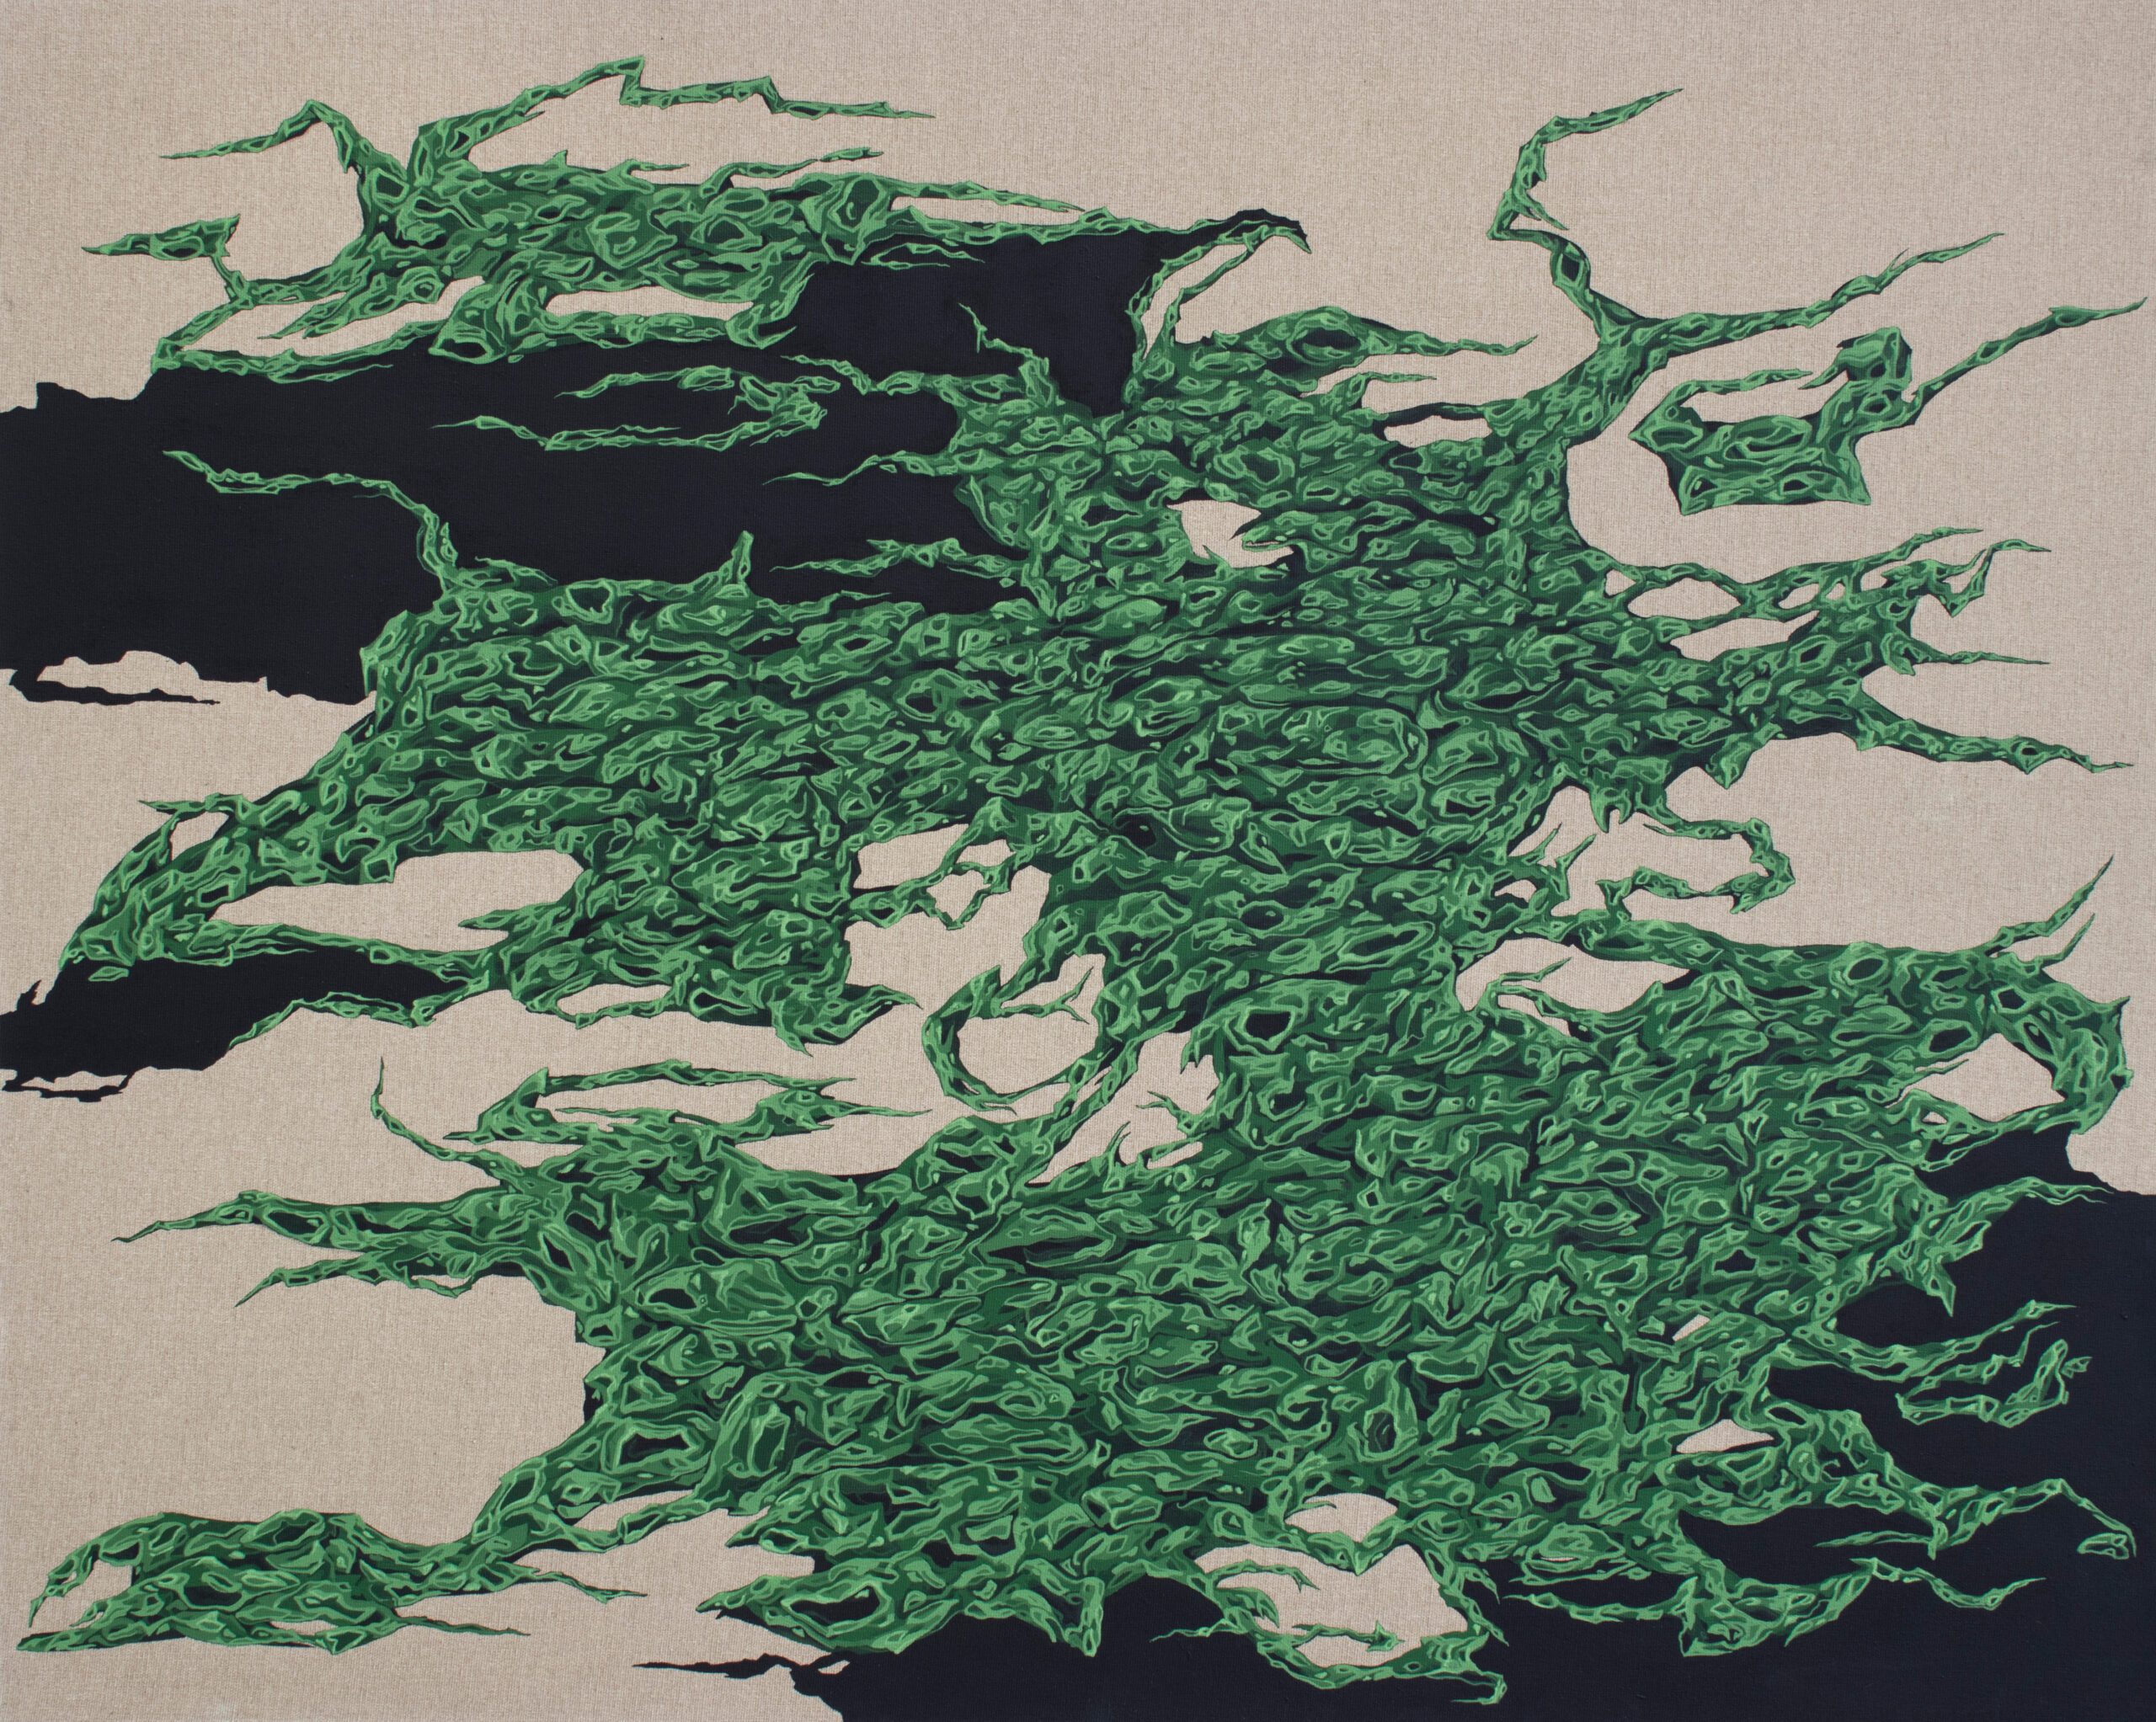 Mostri dalla terra profonda, 2020 - 100x80 cm, acrilico su tela - Camilla Alberti - courtesy of the artist